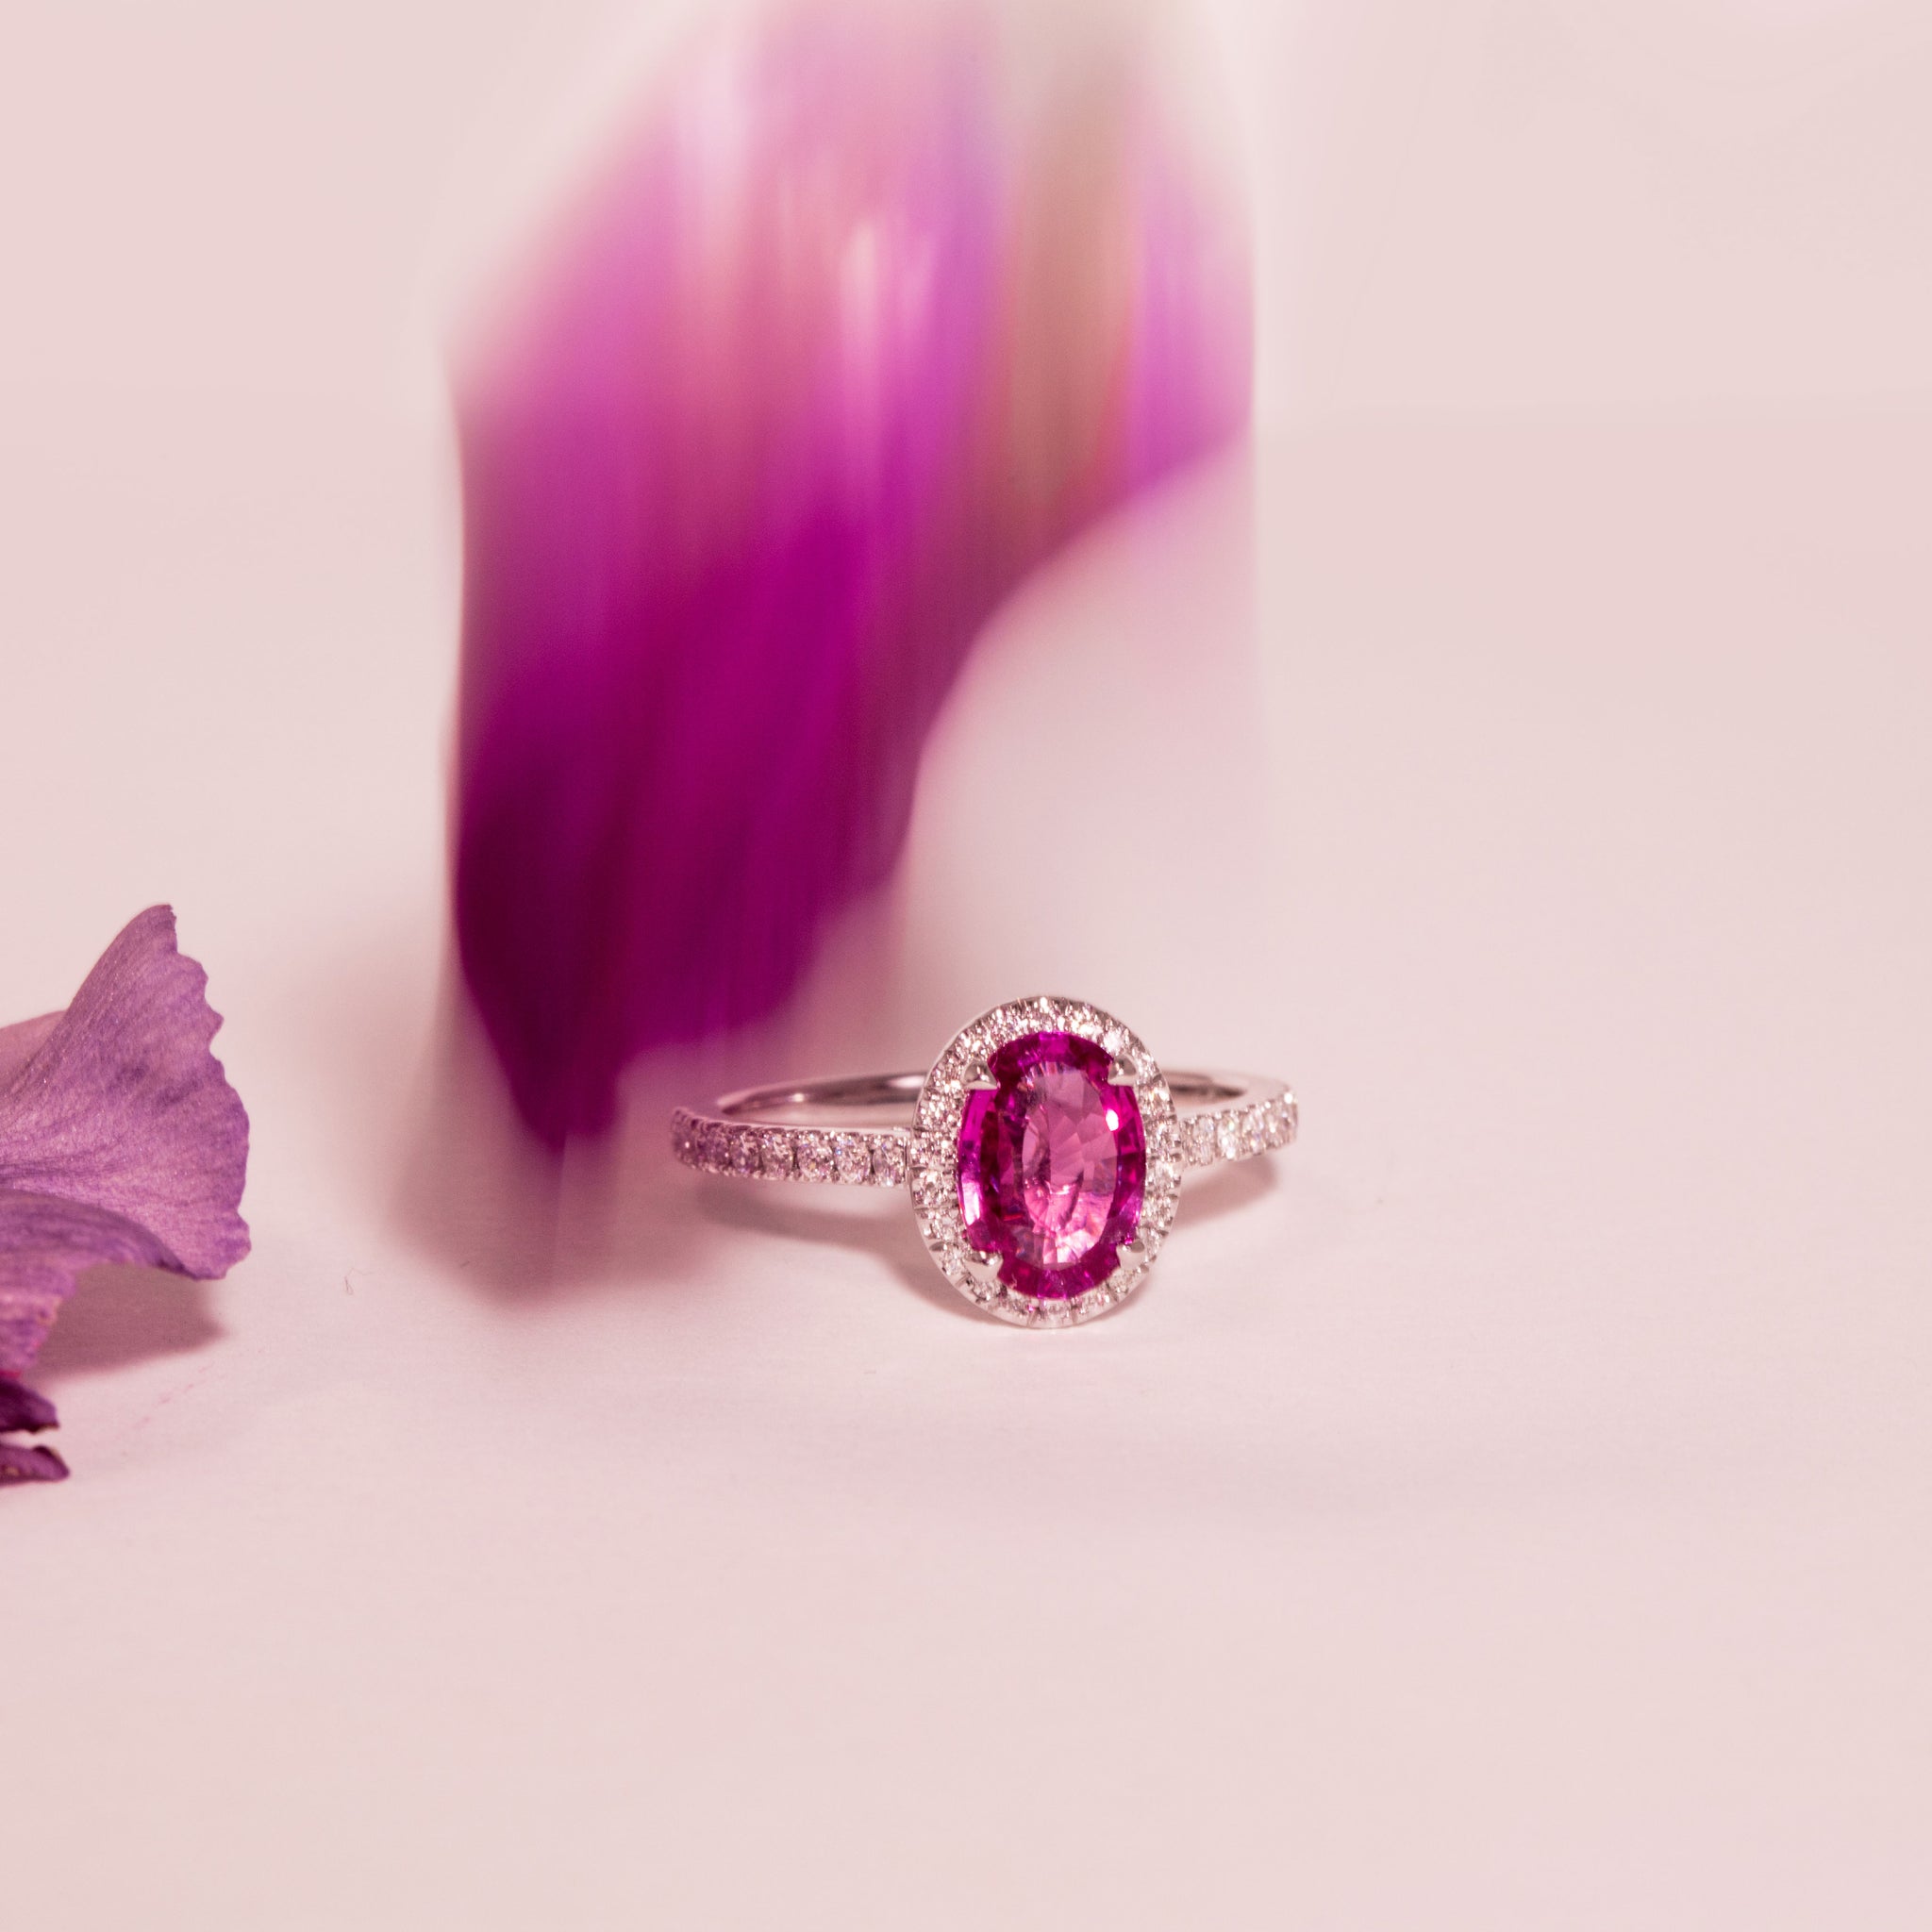 Photo ambiance d'une bague en saphir rose. Le demi pavage et le halo de diamants subliment l'éclat naturelle rosé de la pierre centrale.